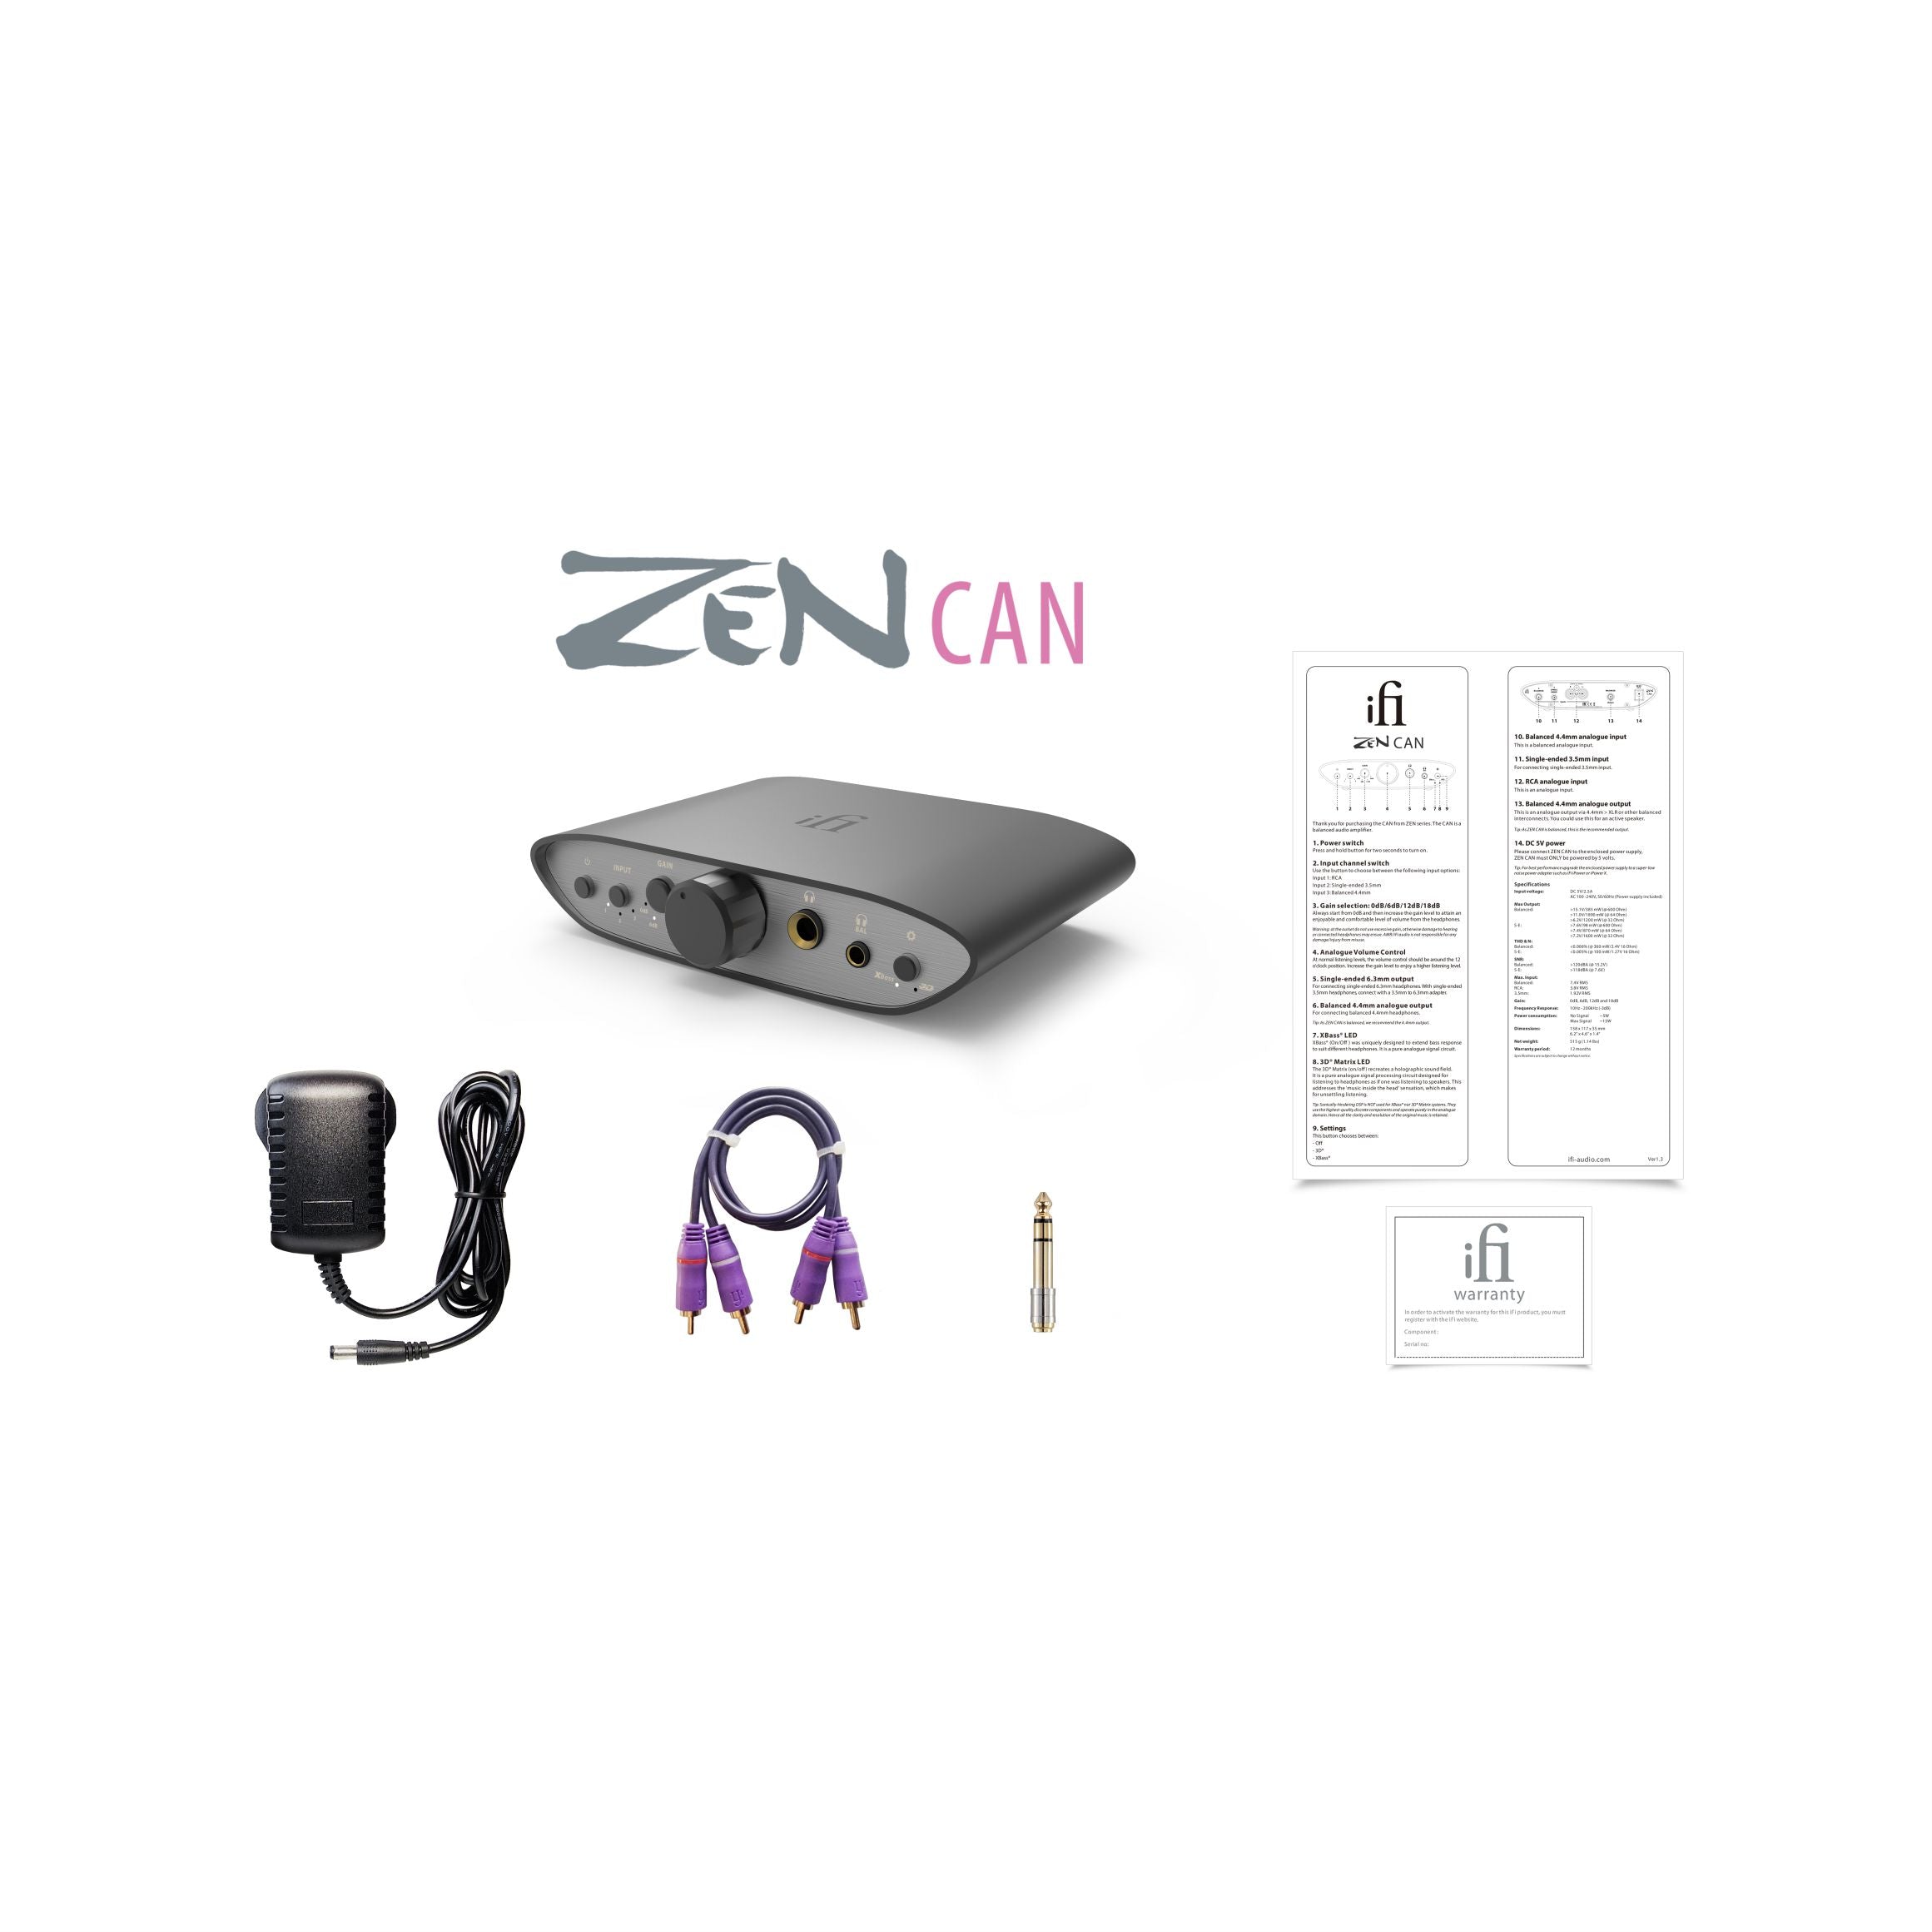 Zen Can - Open Box